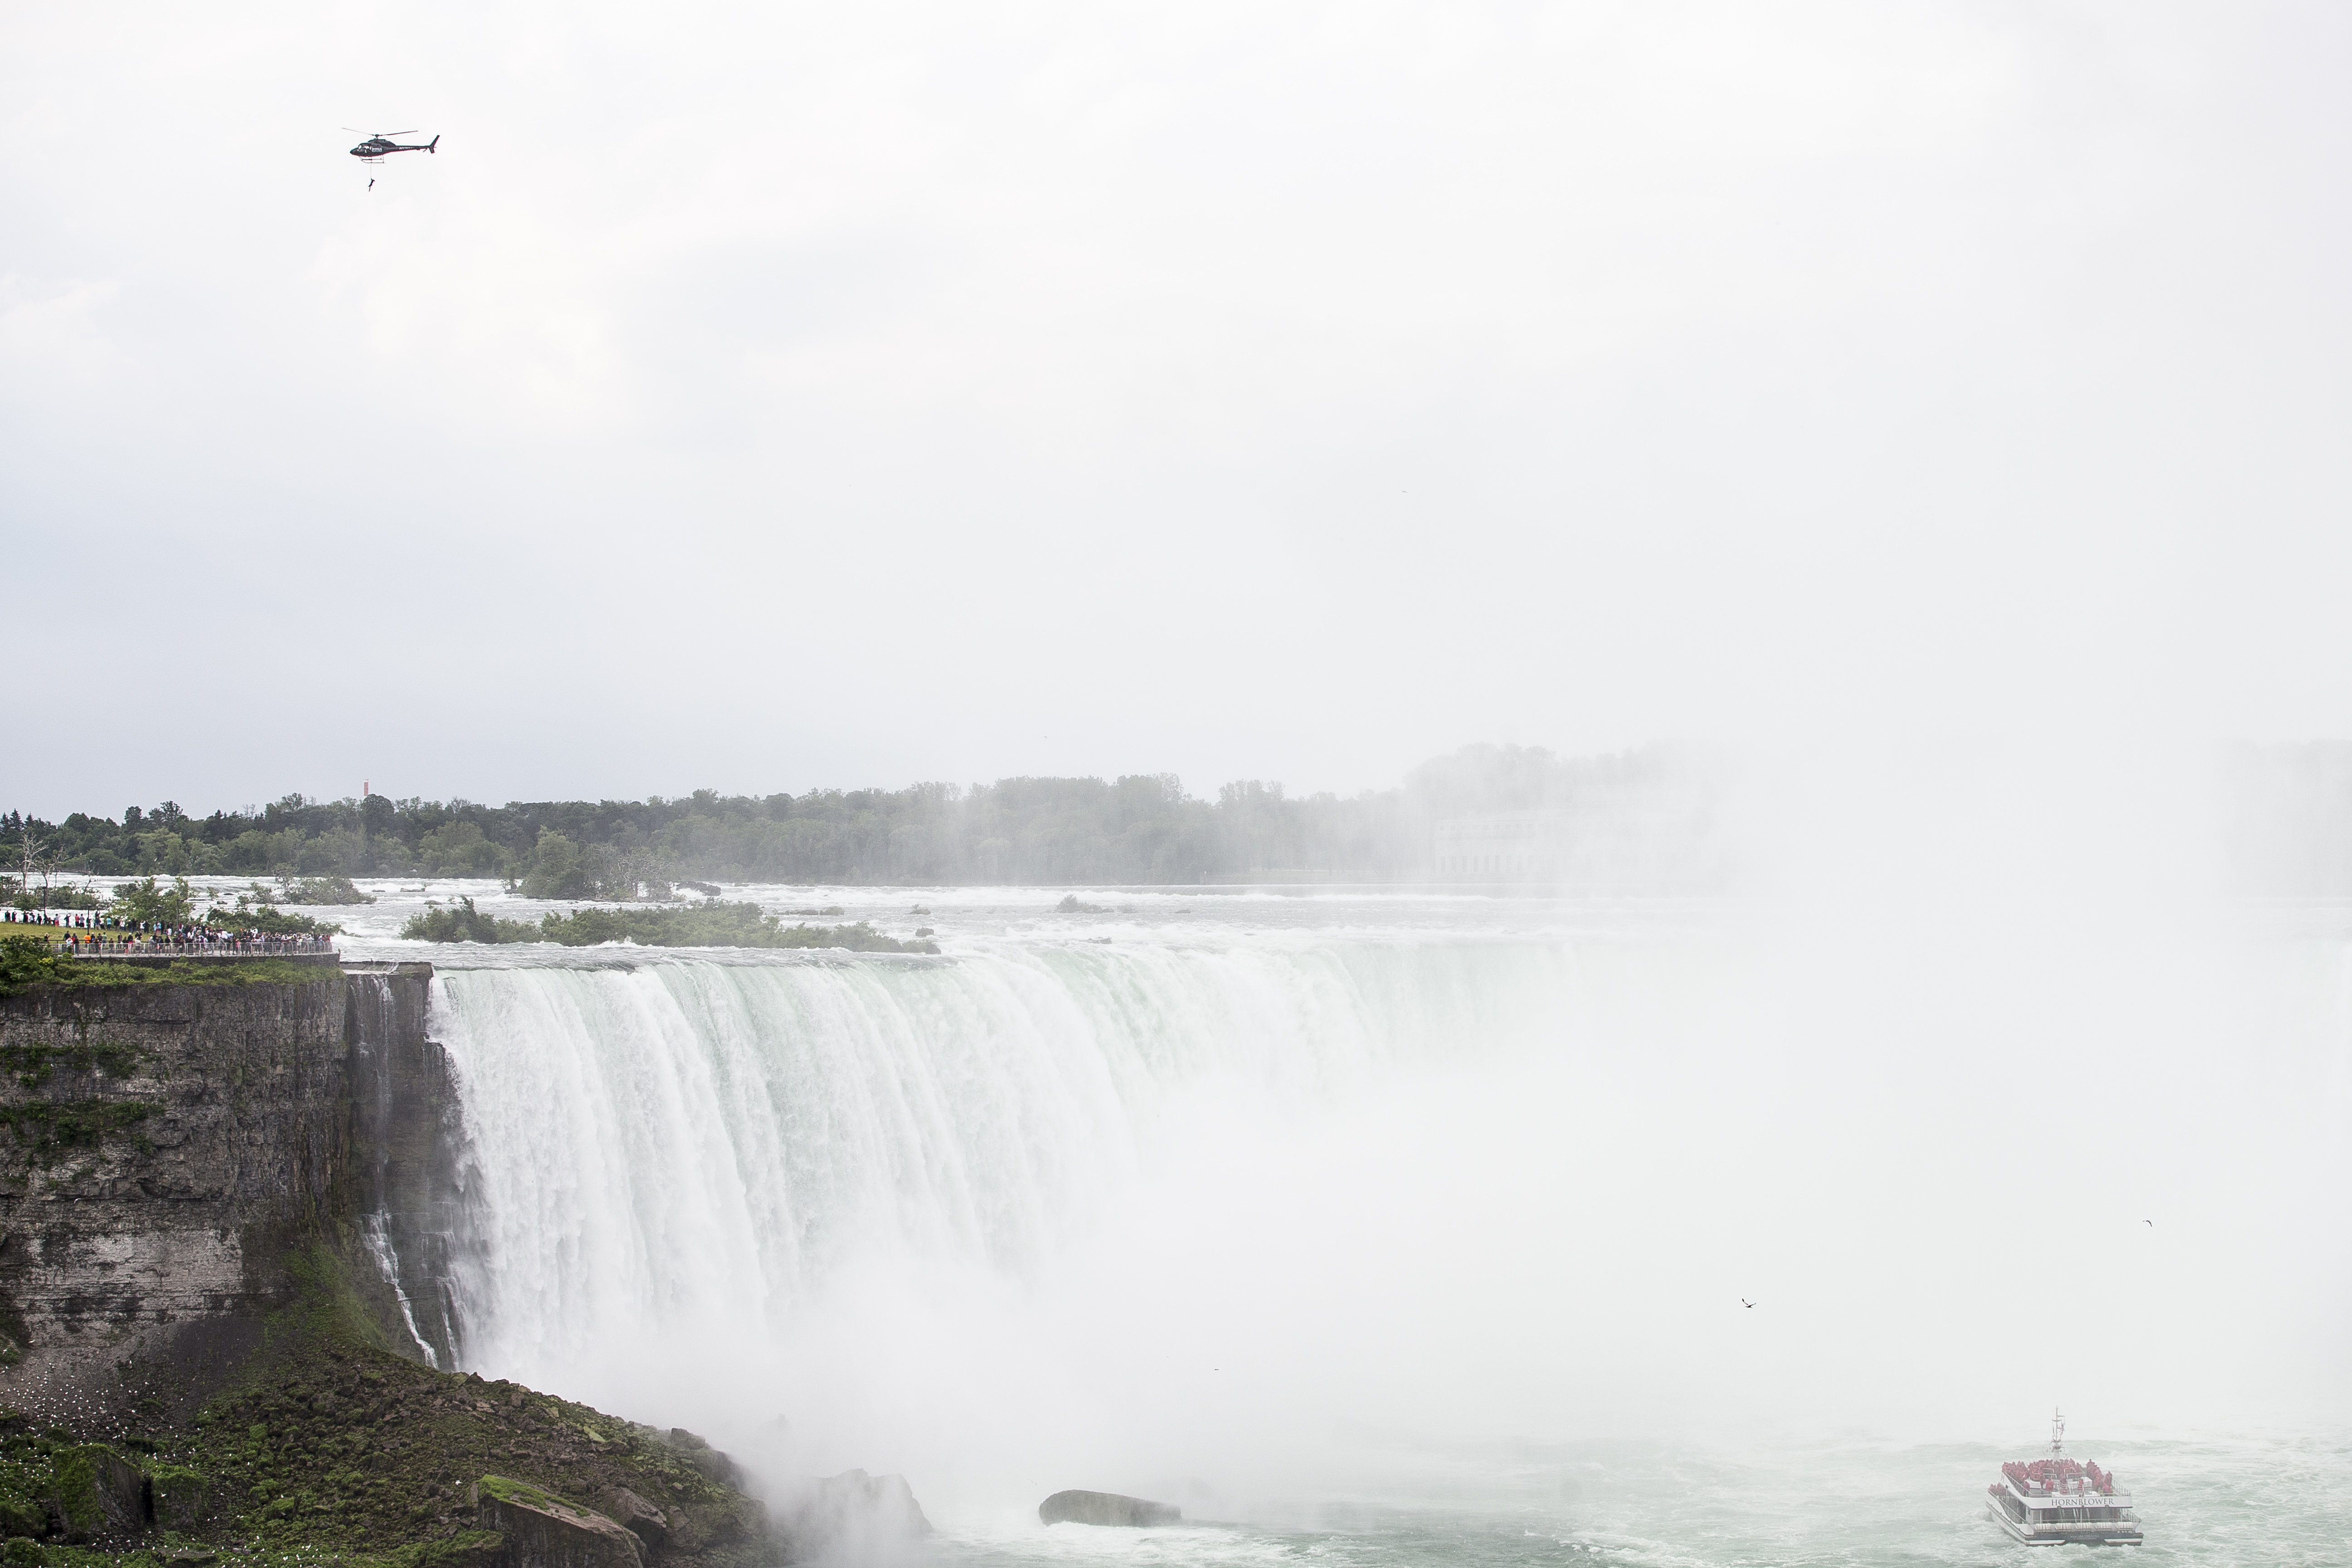 Beleesett egy férfi a Niagara-vízesésbe